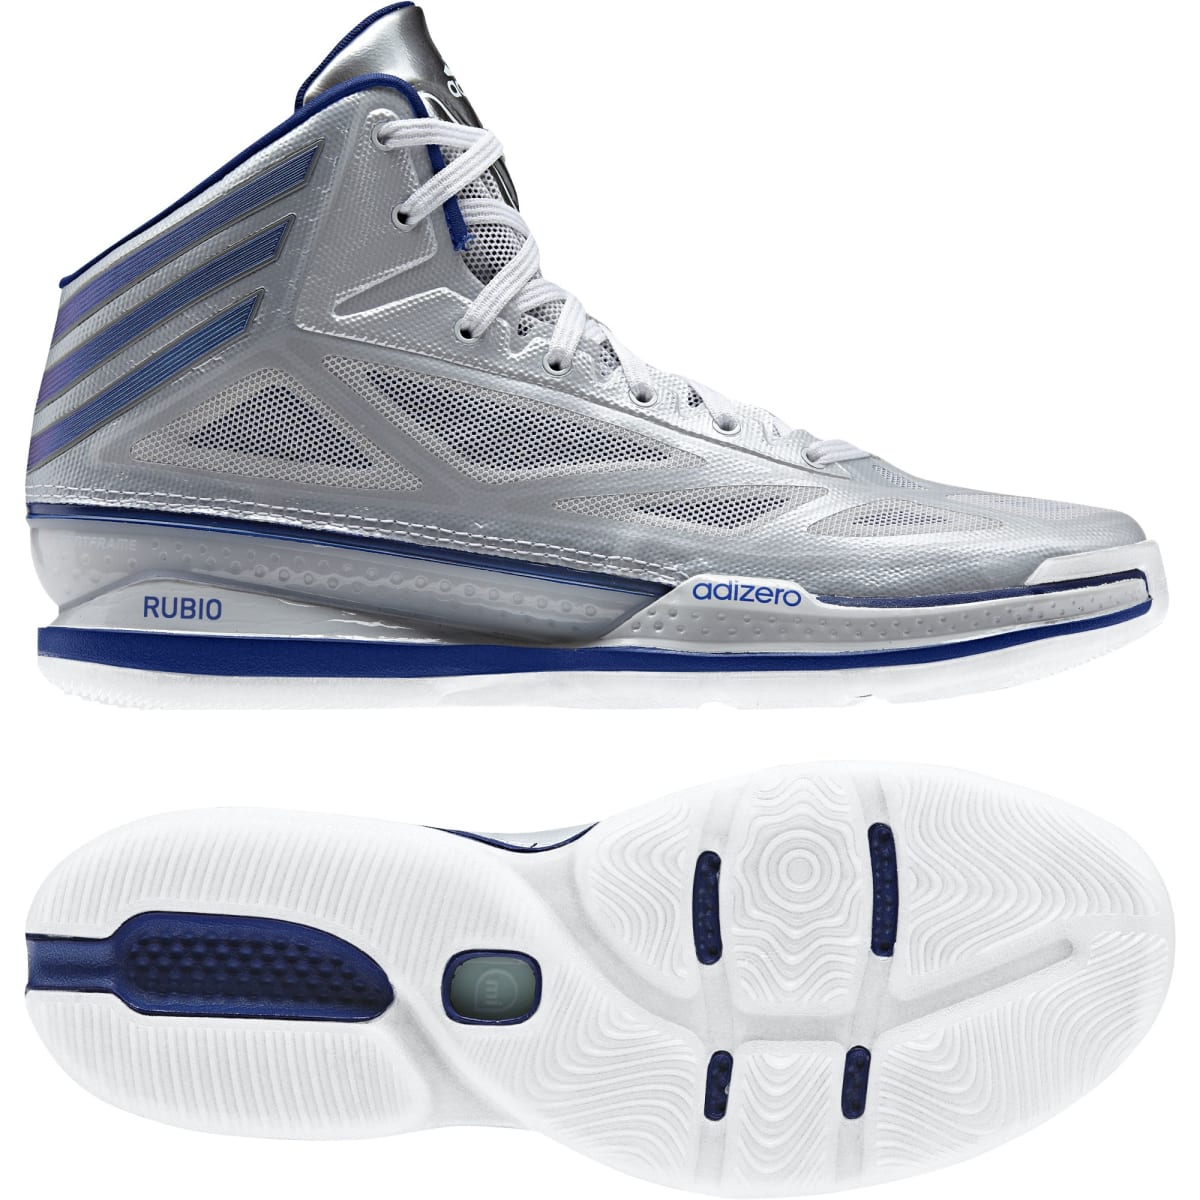 adidas crazy light 3 basketball shoes